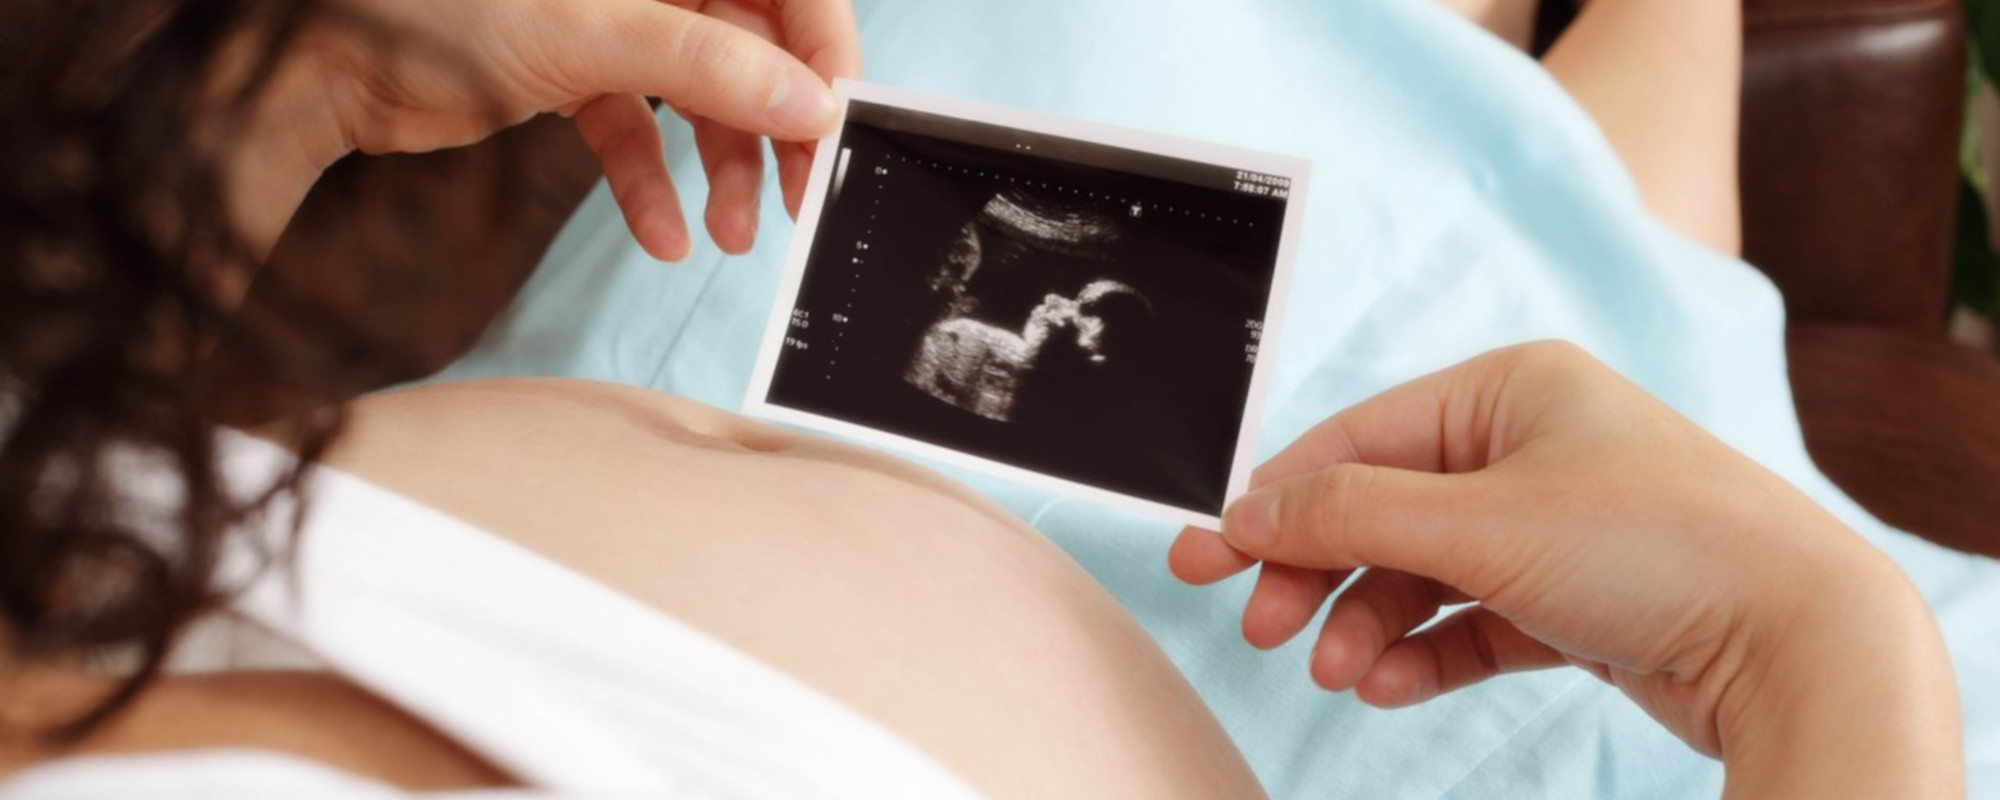 Какое УЗИ делают при беременности?